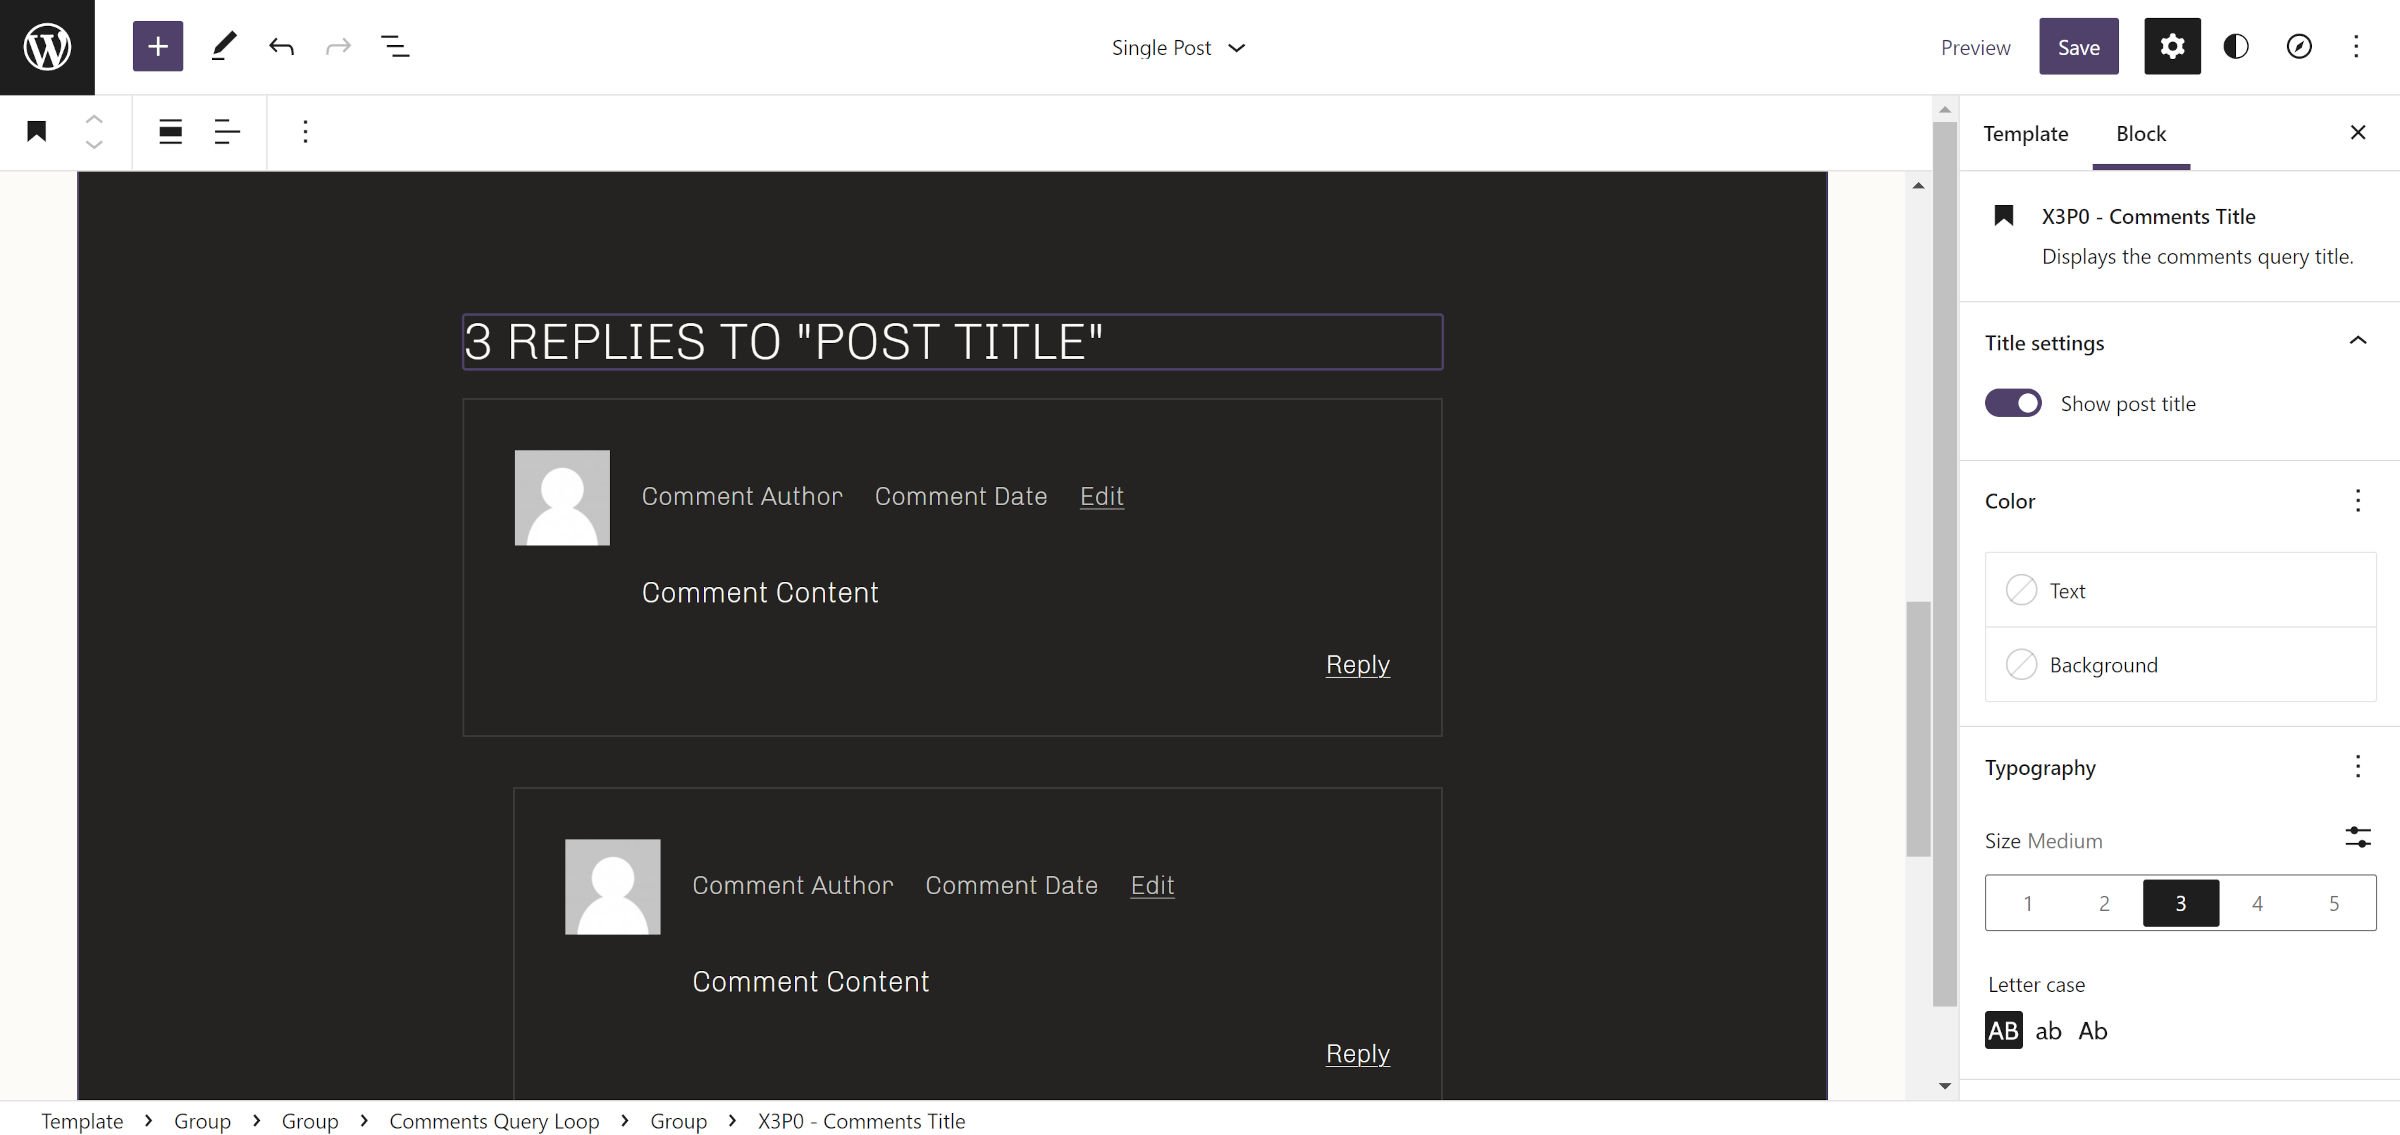 WordPress-Site-Editor mit eingefügter Kommentarabfrageschleife.  Oben ist ein Kommentar-Titelblock hervorgehoben.